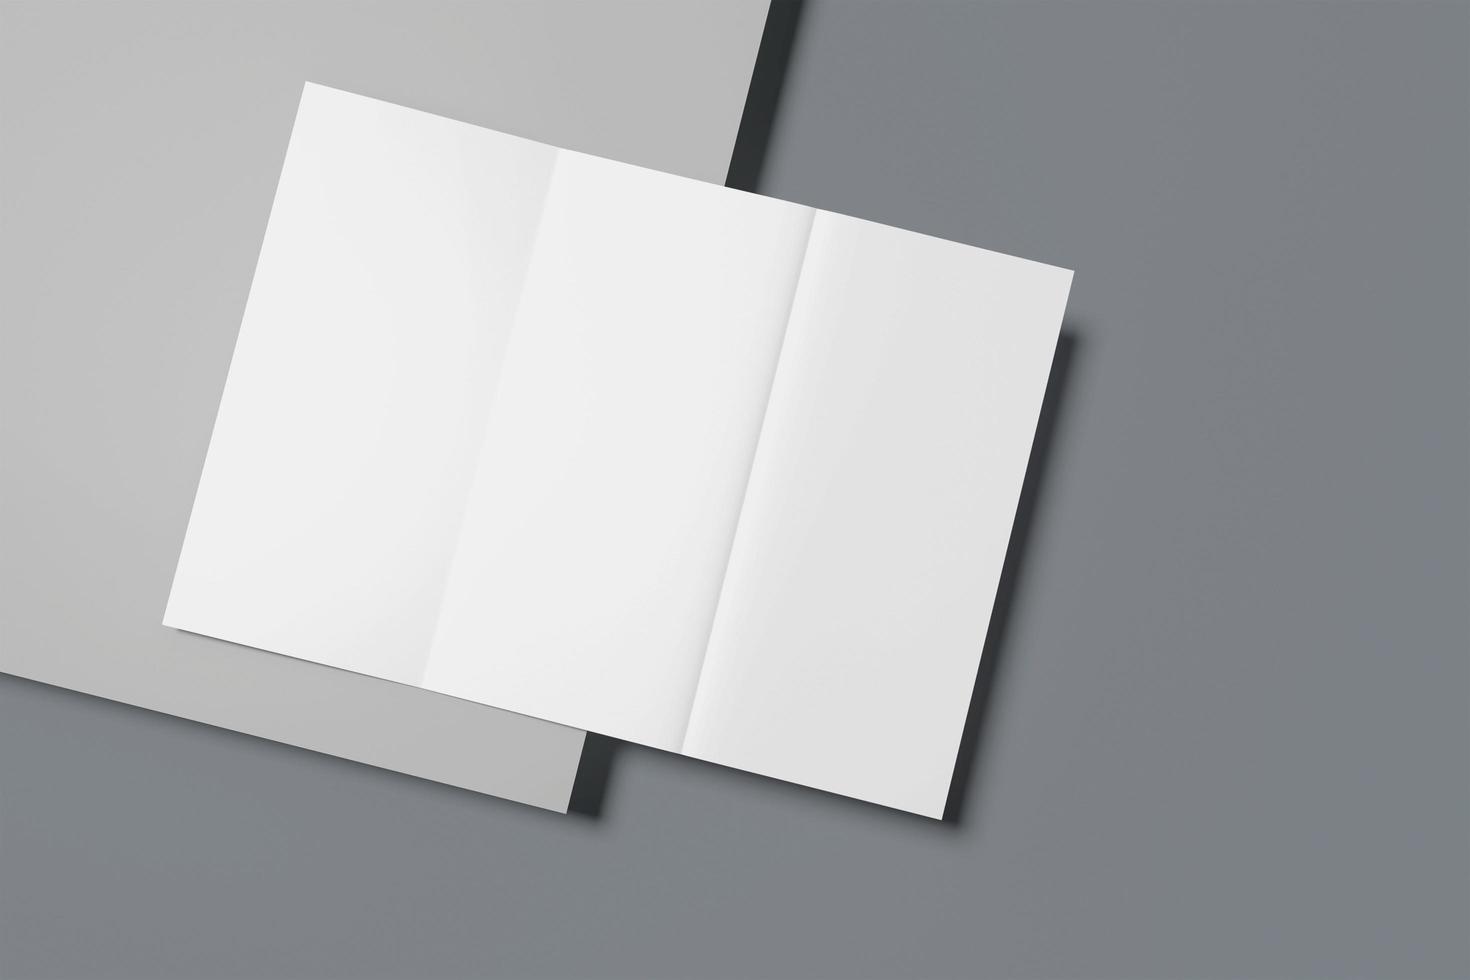 tom trippelvikt broschyrmall för mock up och presentationsdesign. 3d rendering foto